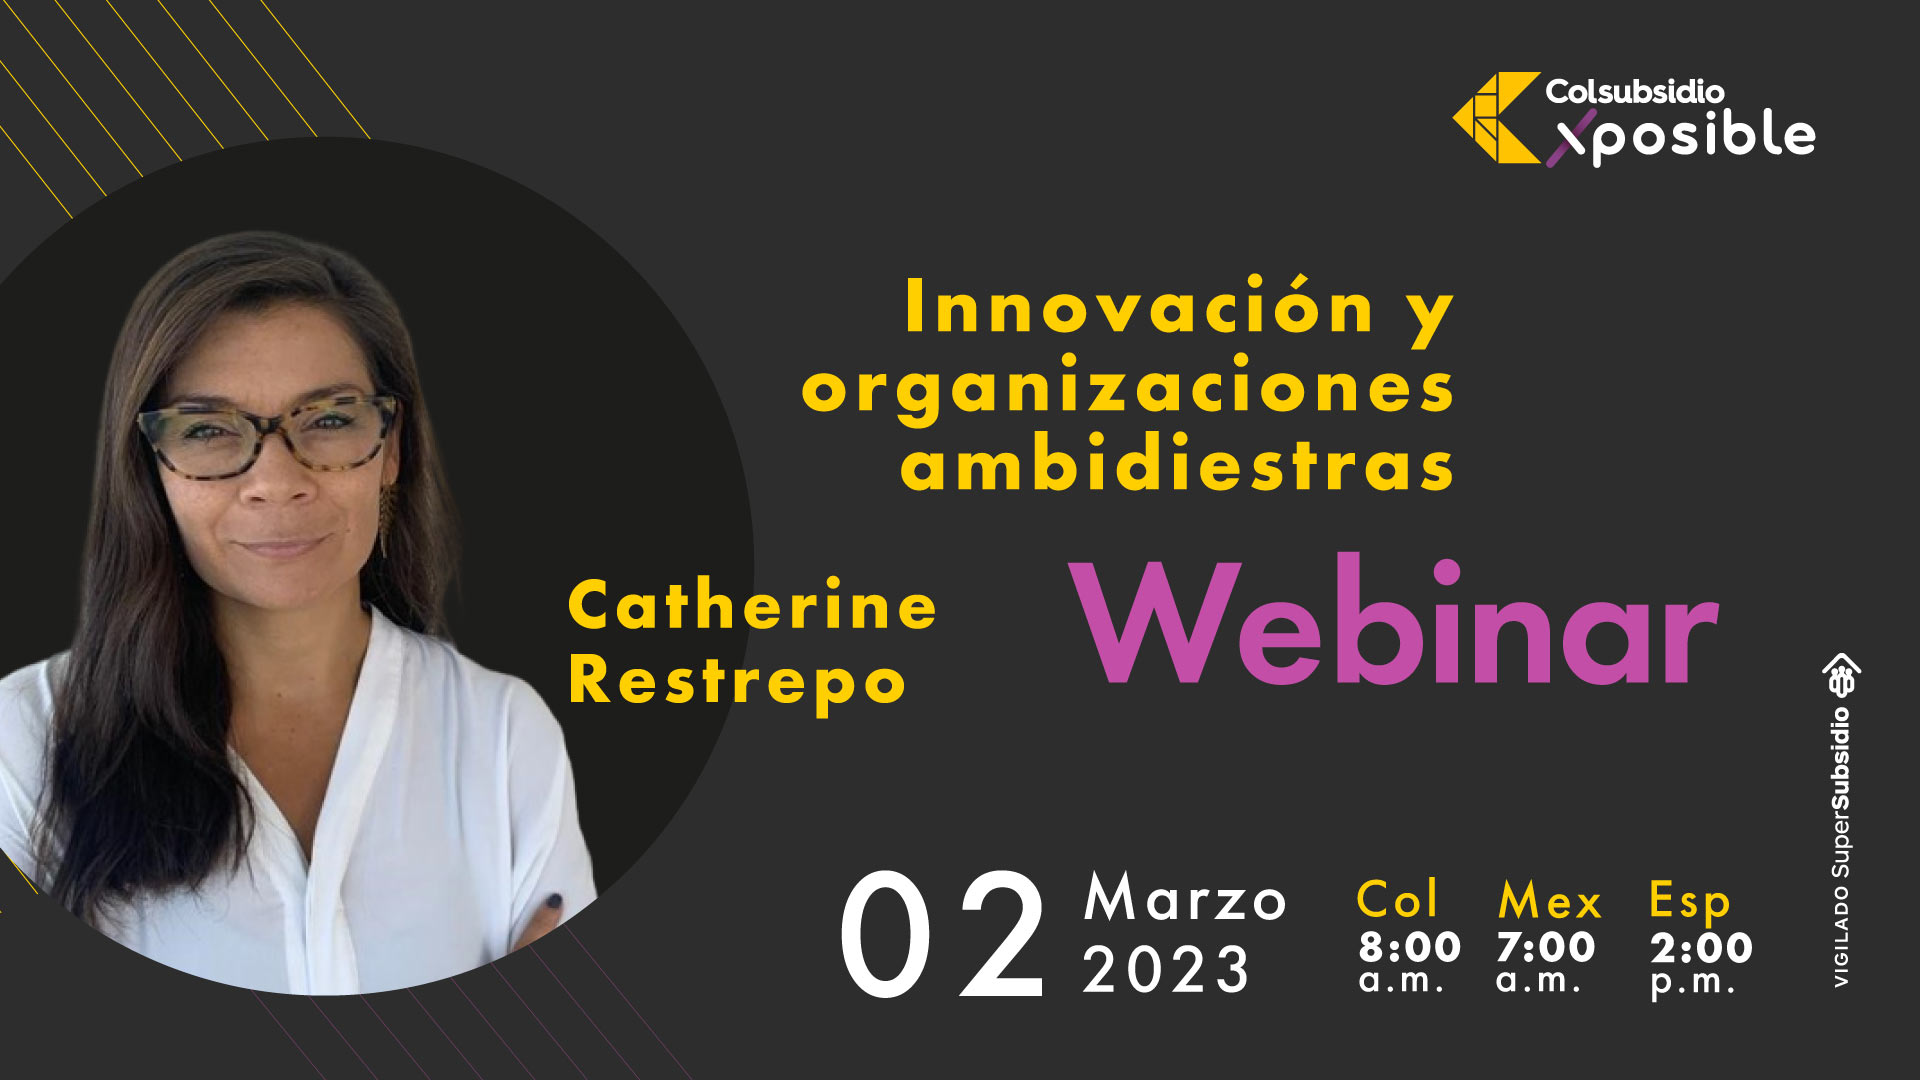 Imagen informativa sobre el webinar con Catherine Restrepo innovación y organizaciones ambidiestras 